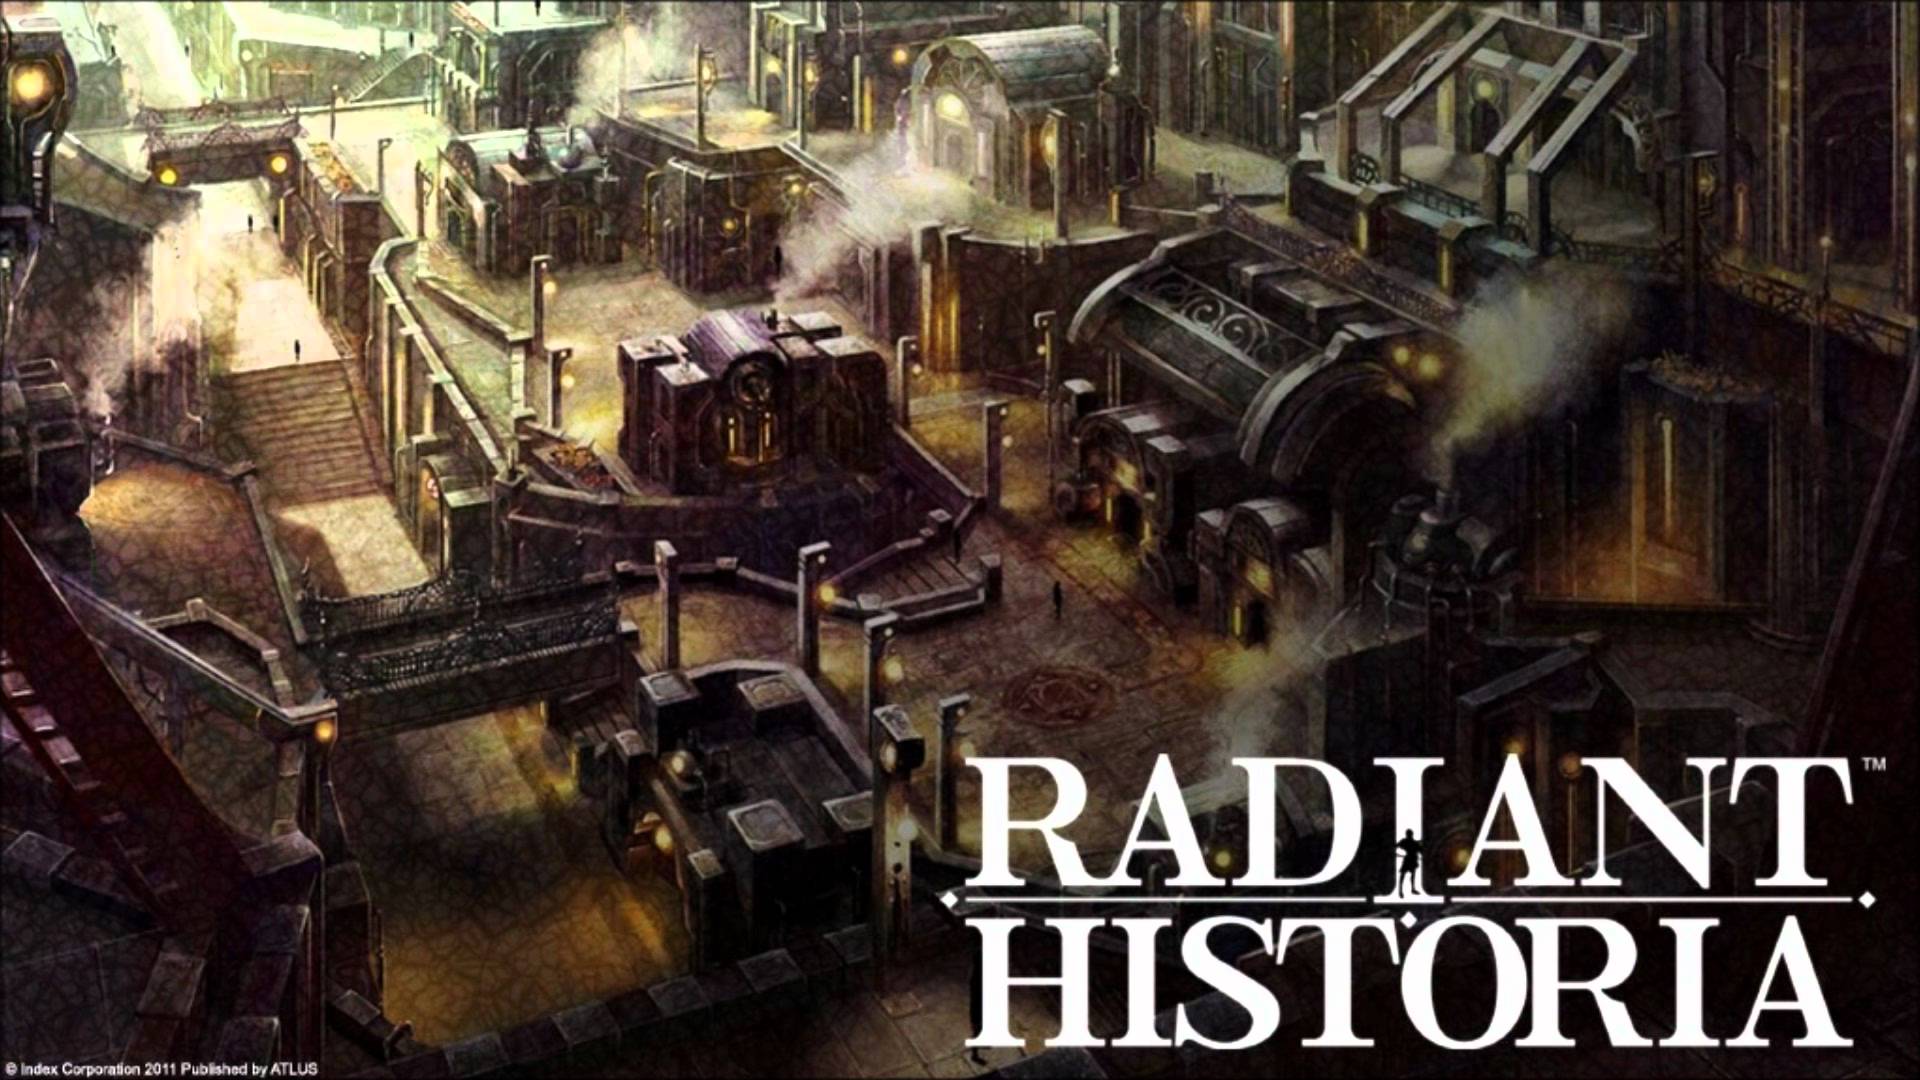 Best VGM 1075 Historia Radiance Battle Theme